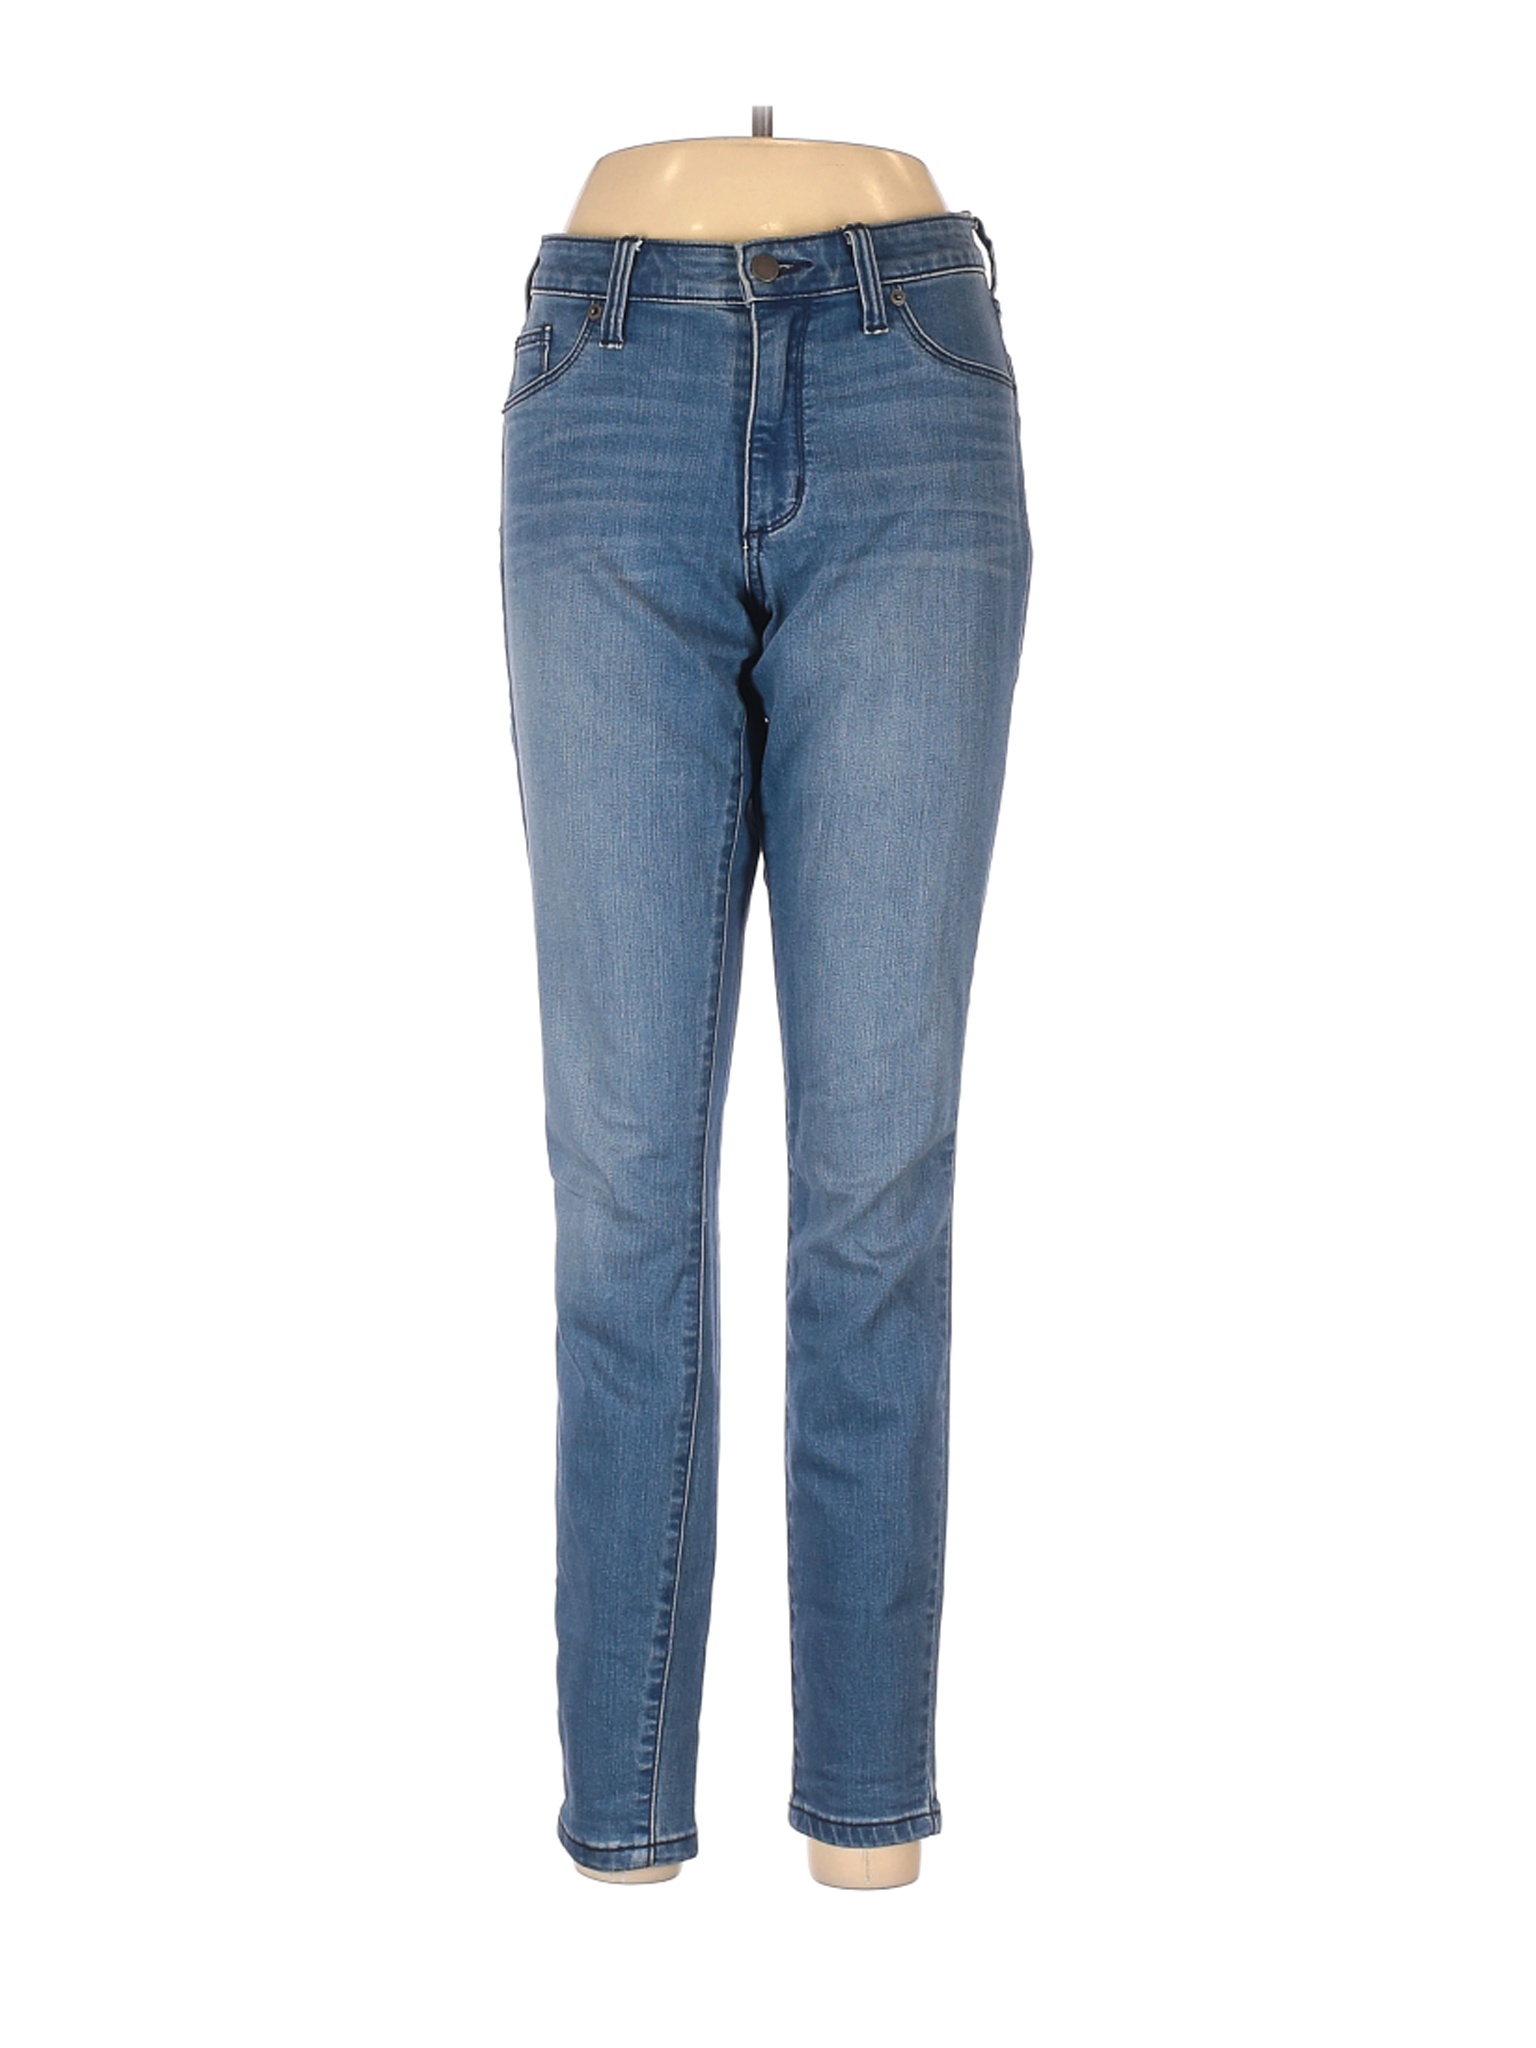 Universal Thread Women Blue Jeans 29W | eBay